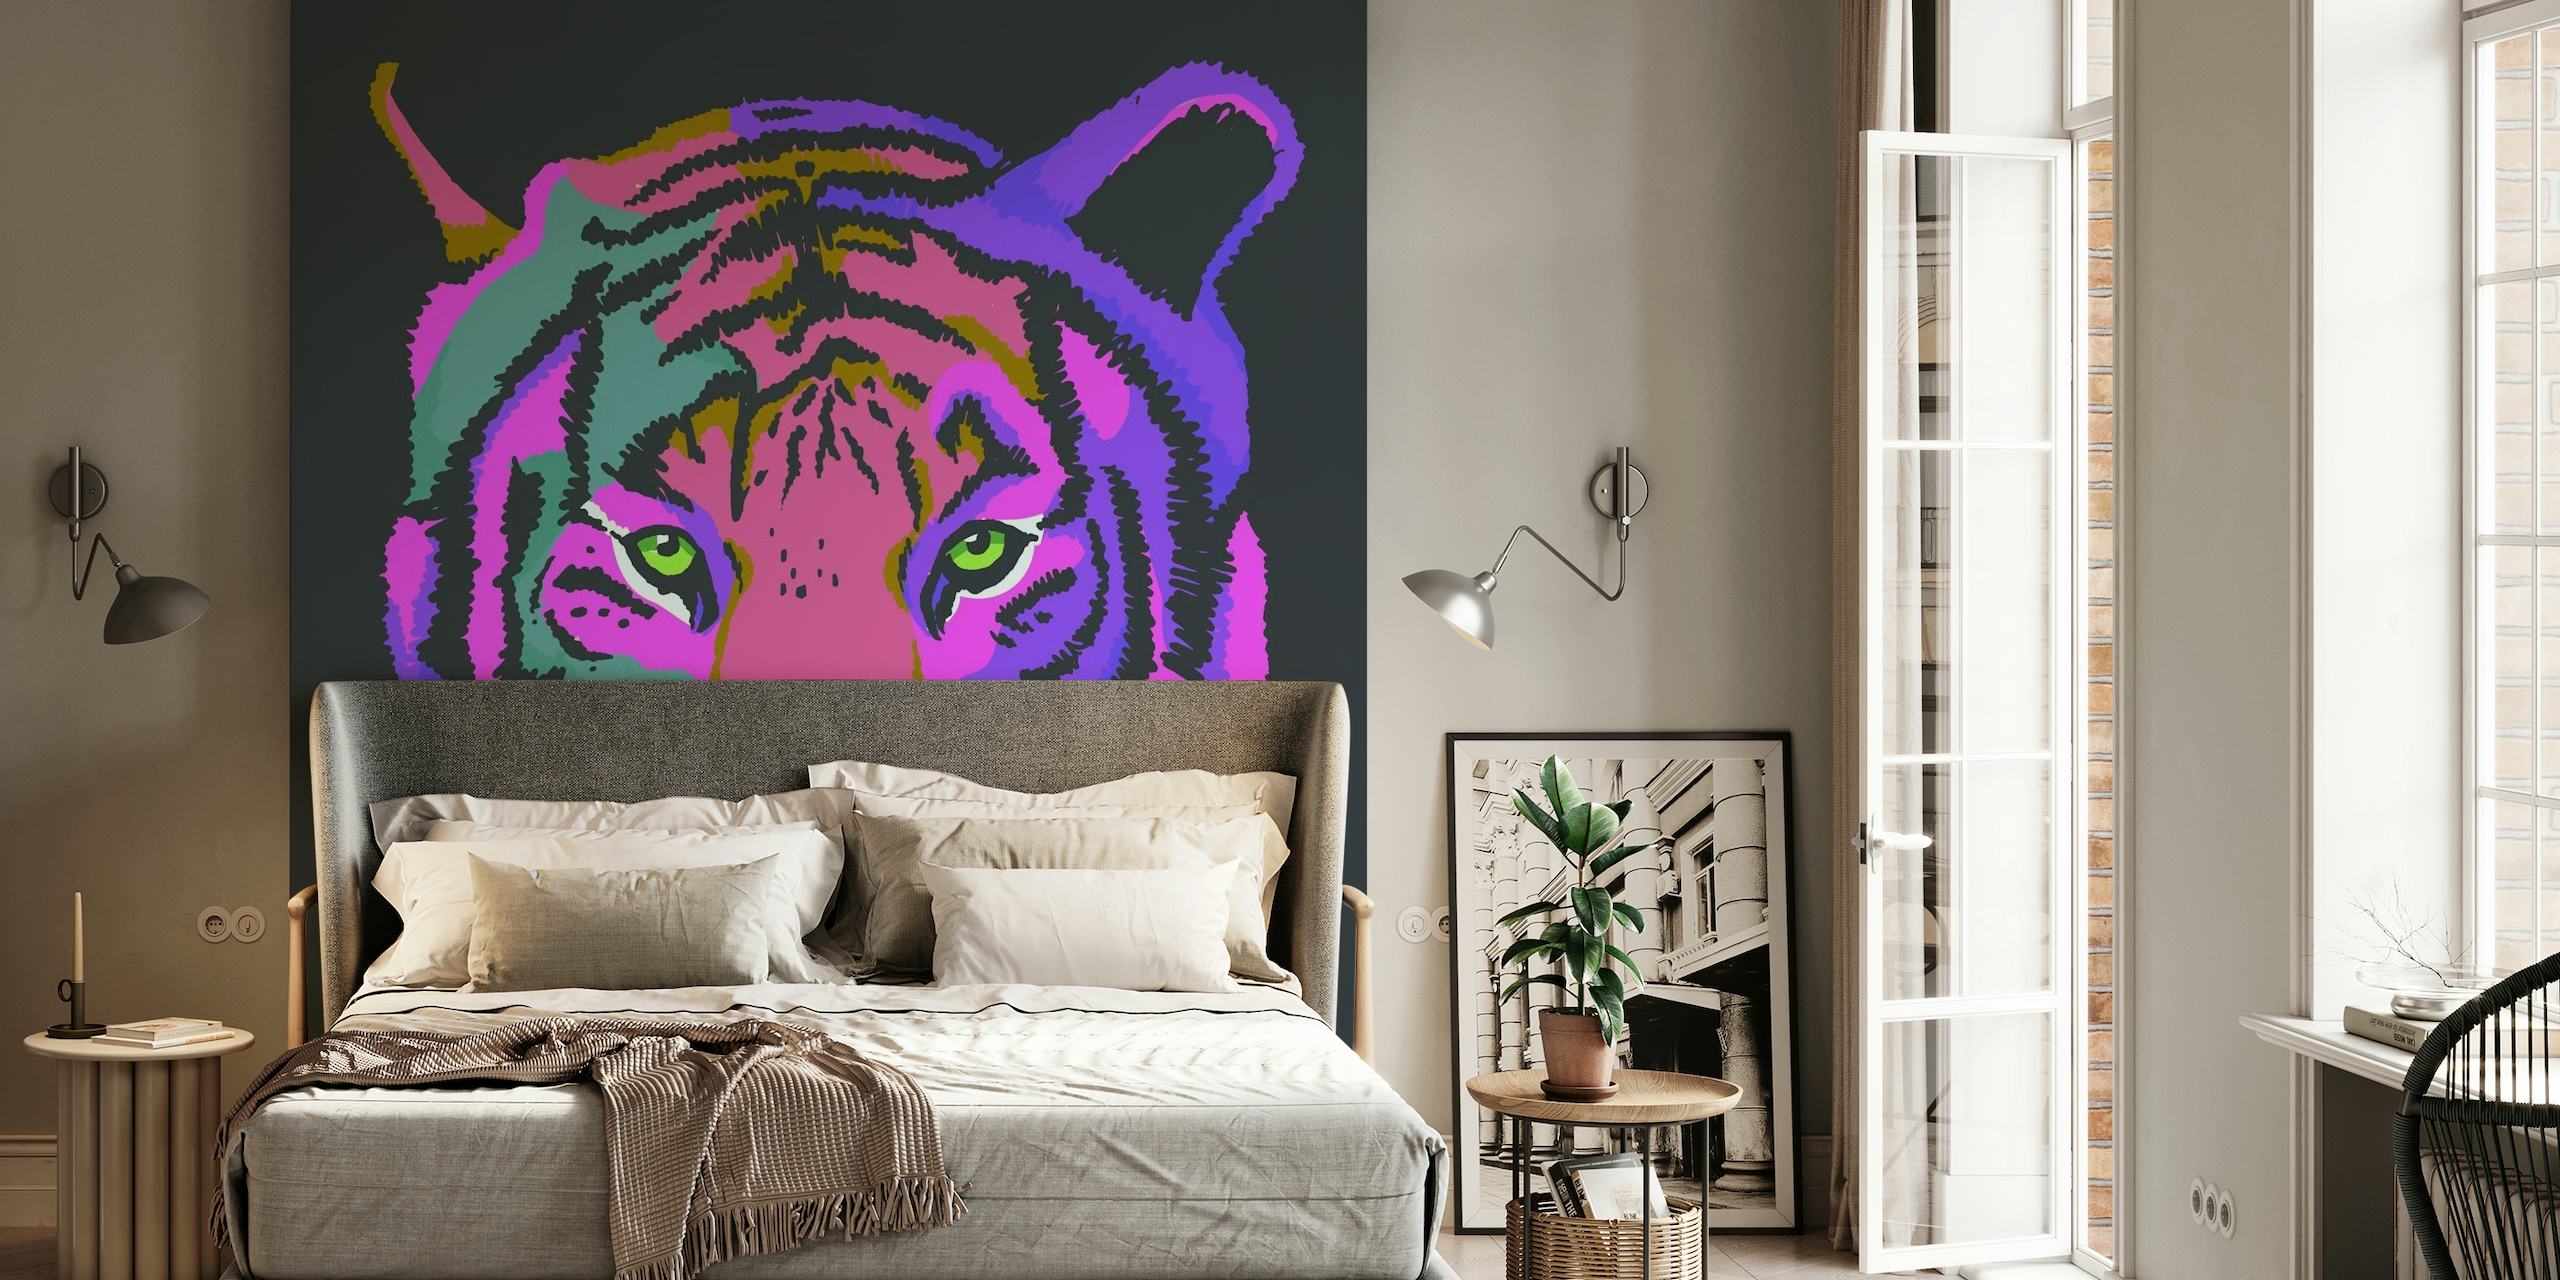 Värikäs seinämaalaus, jossa on tyylitelty tiikeri purppuran ja pinkin sävyissä tummaa taustaa vasten.